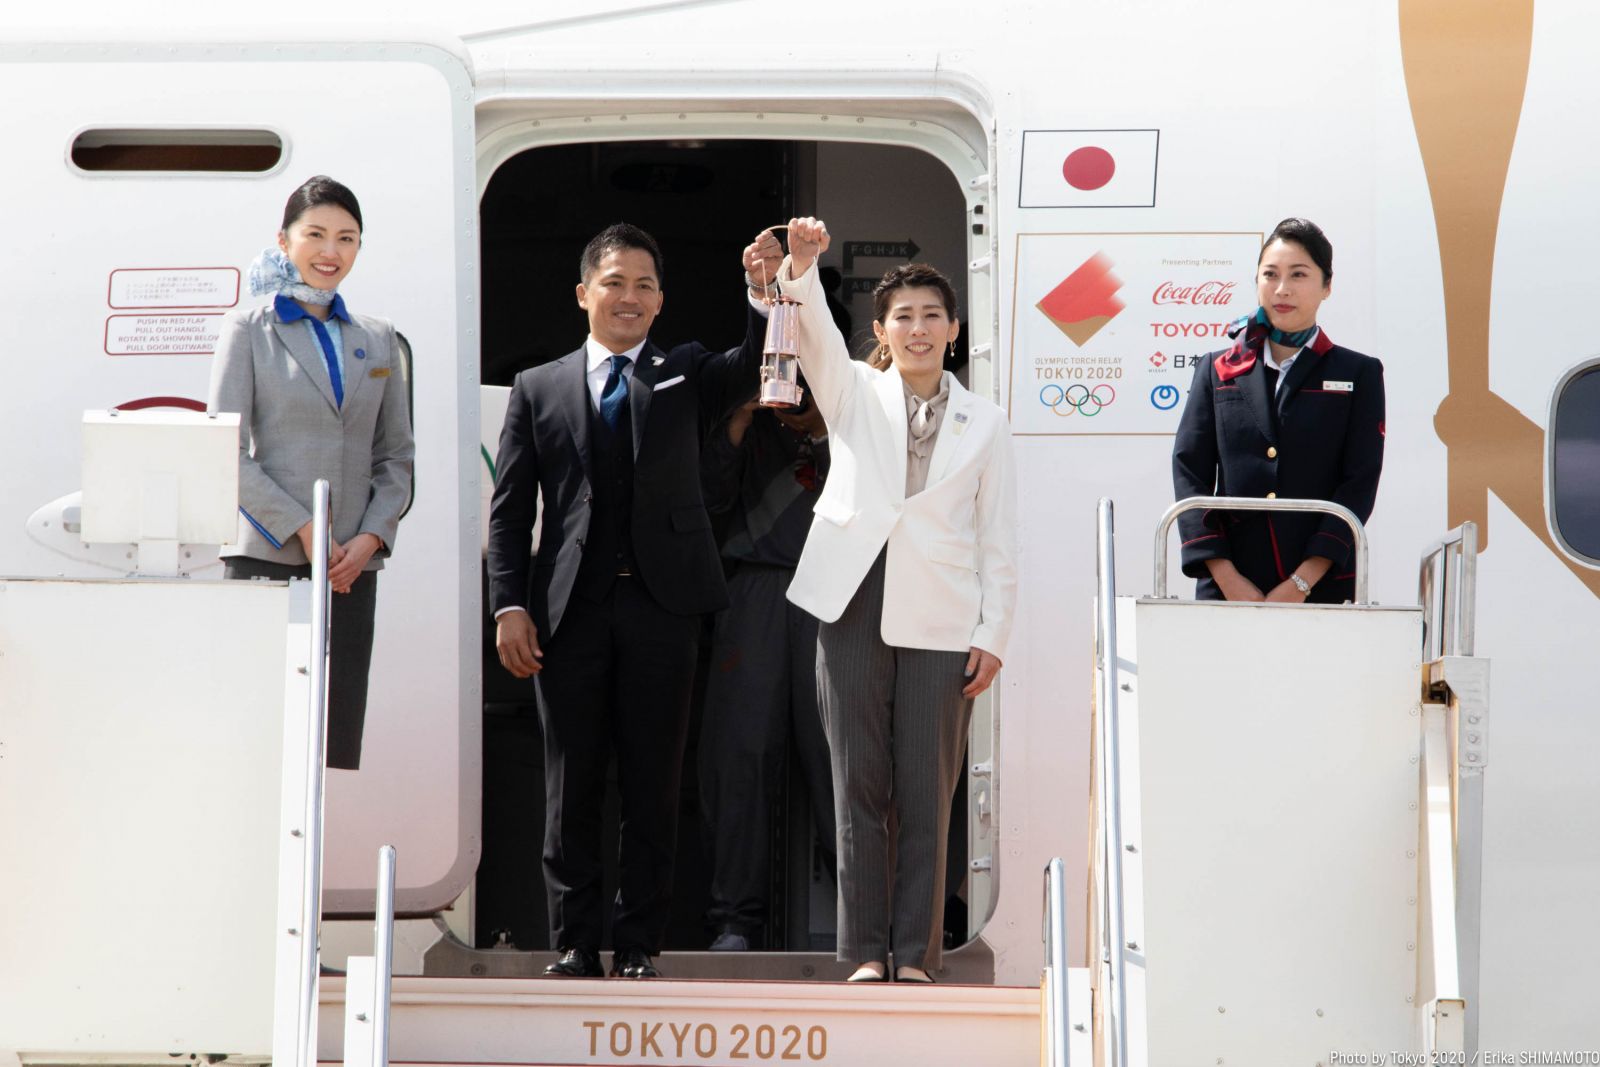 До Японії прибув олімпійський вогонь. Фото: Tokyo2020